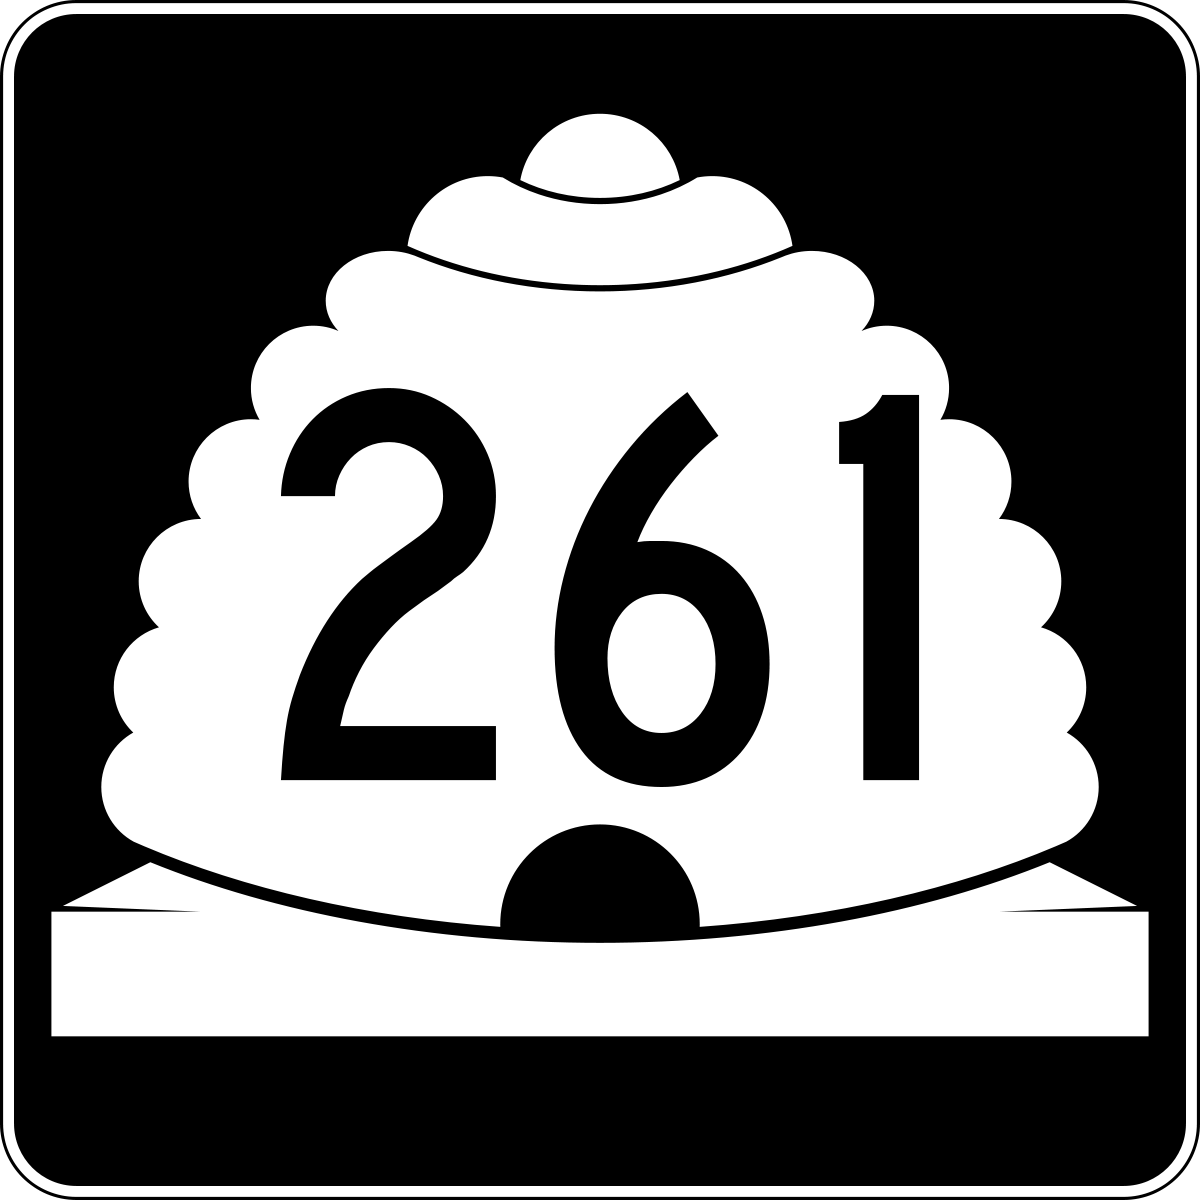 Straßenschild der Utah State Route 261